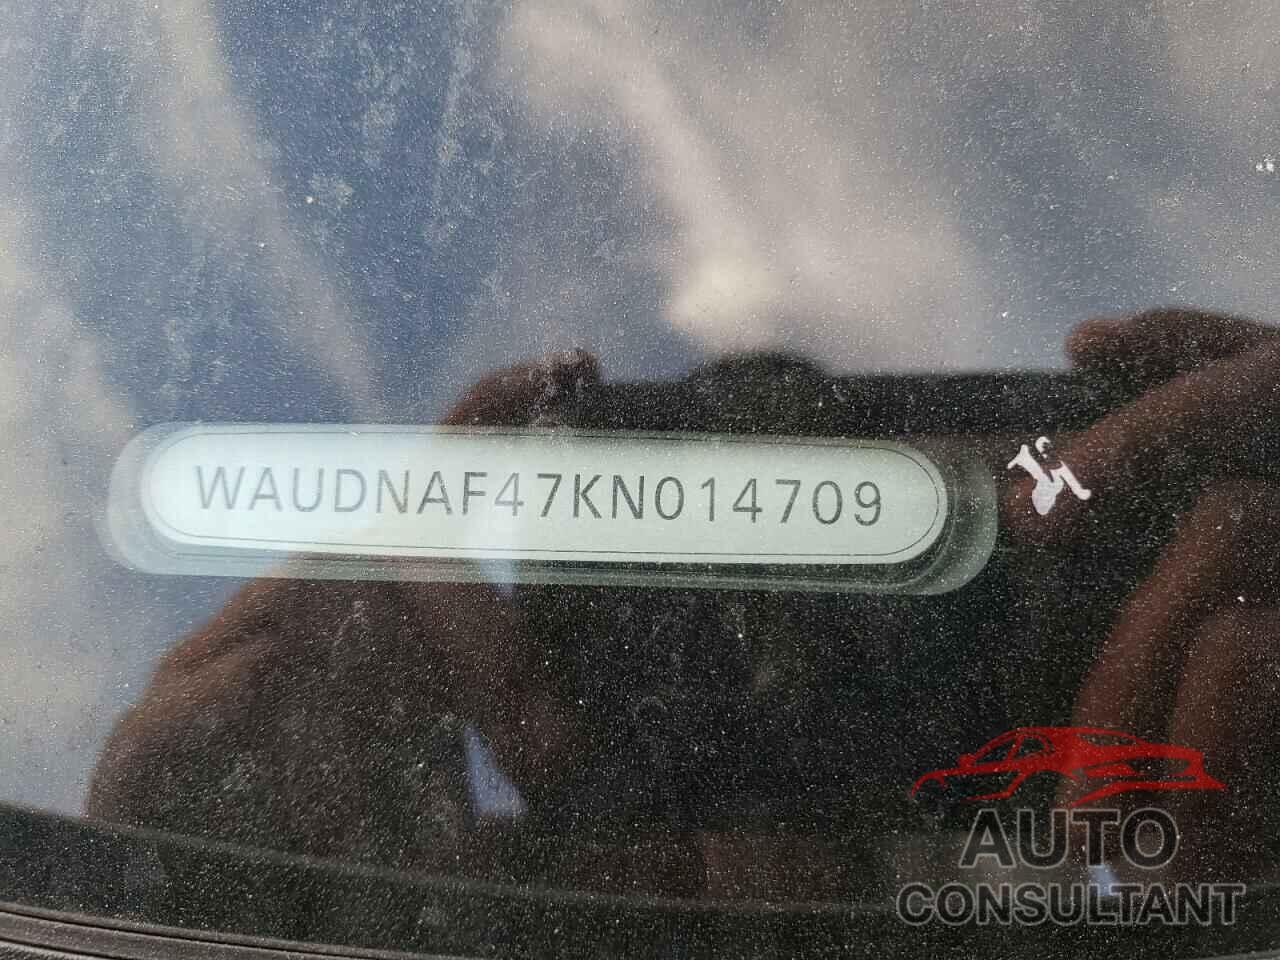 AUDI A4 2019 - WAUDNAF47KN014709